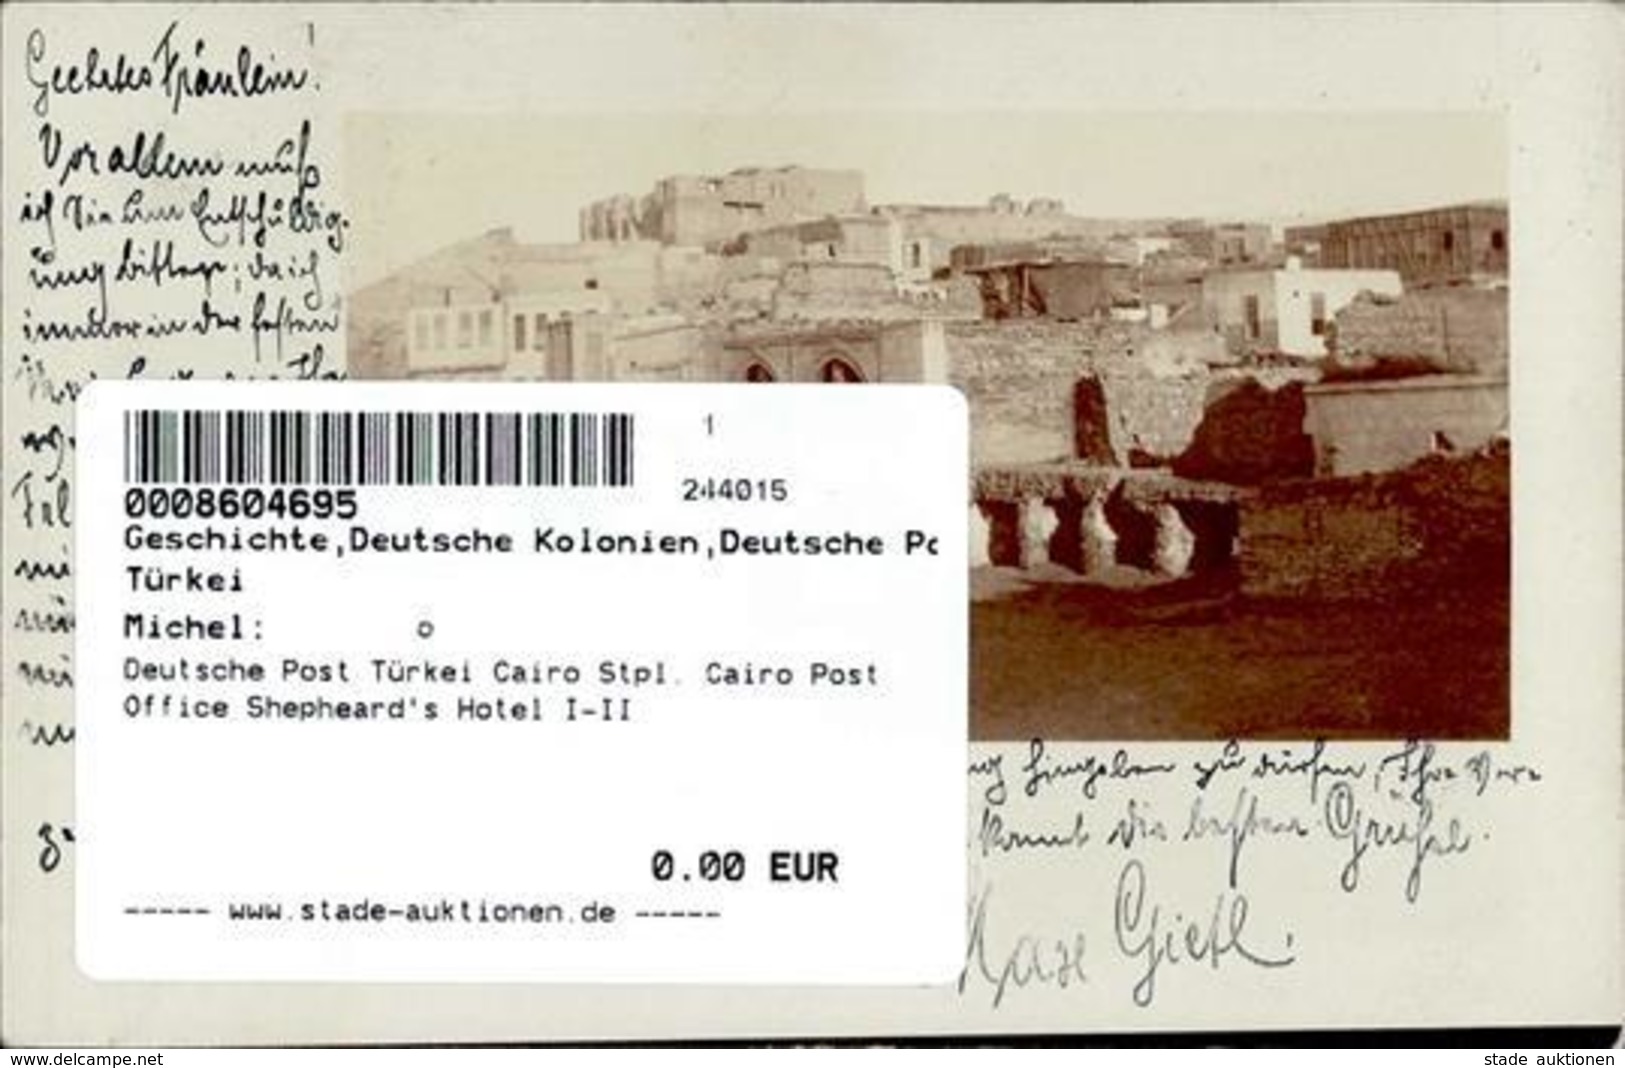 Deutsche Post Türkei Cairo Stpl. Cairo Post Office Shepheard's Hotel I-II - Histoire